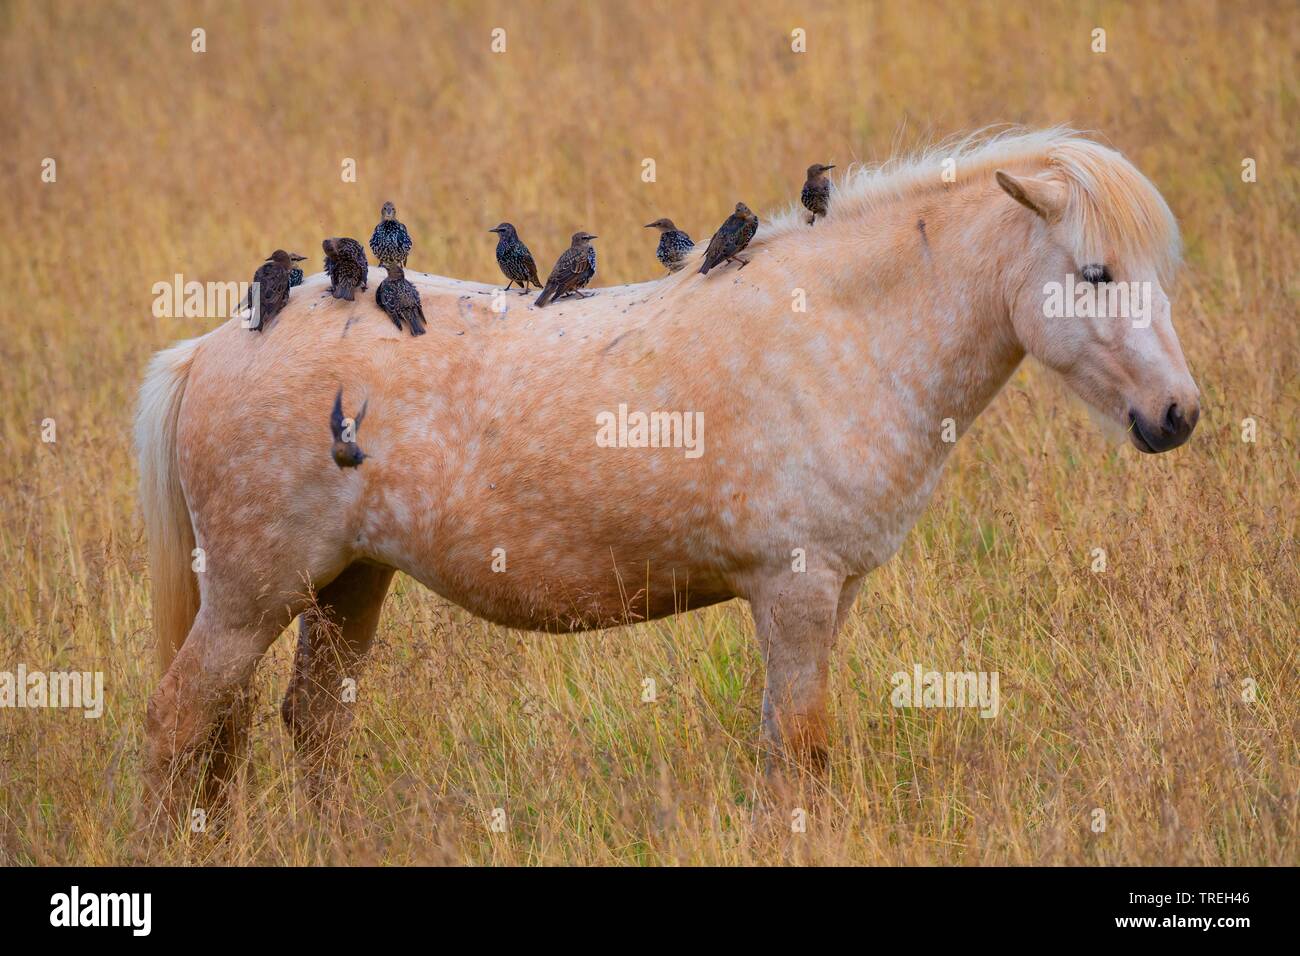 Étourneau sansonnet (Sturnus vulgaris), troupe de se percher sur un cheval islandais, Islande Banque D'Images